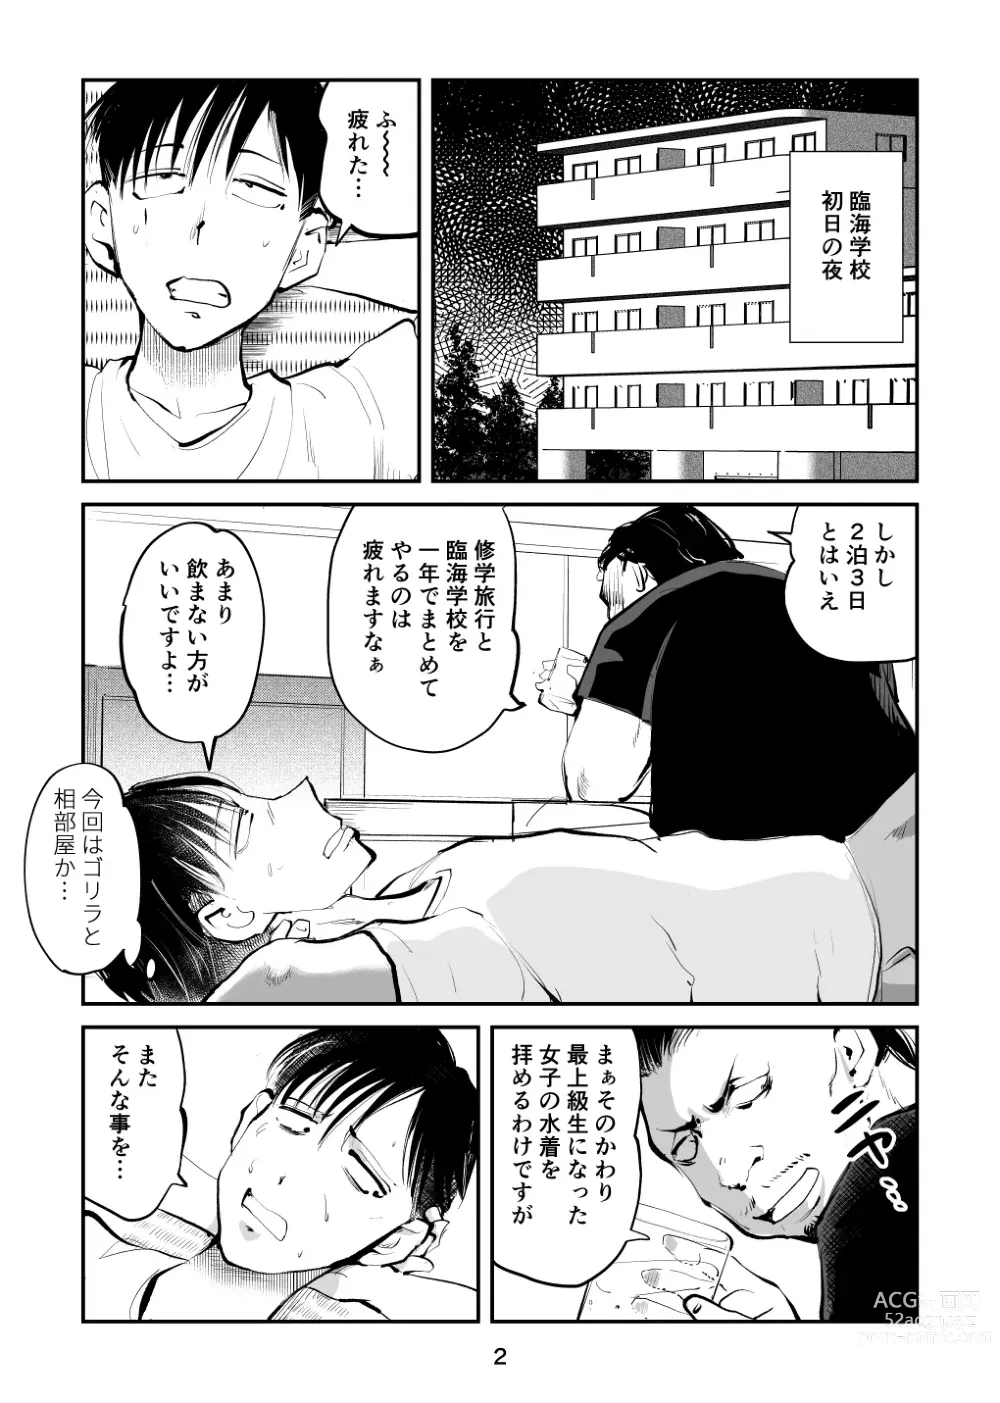 Page 2 of doujinshi Chinpo Shiikukakari 7